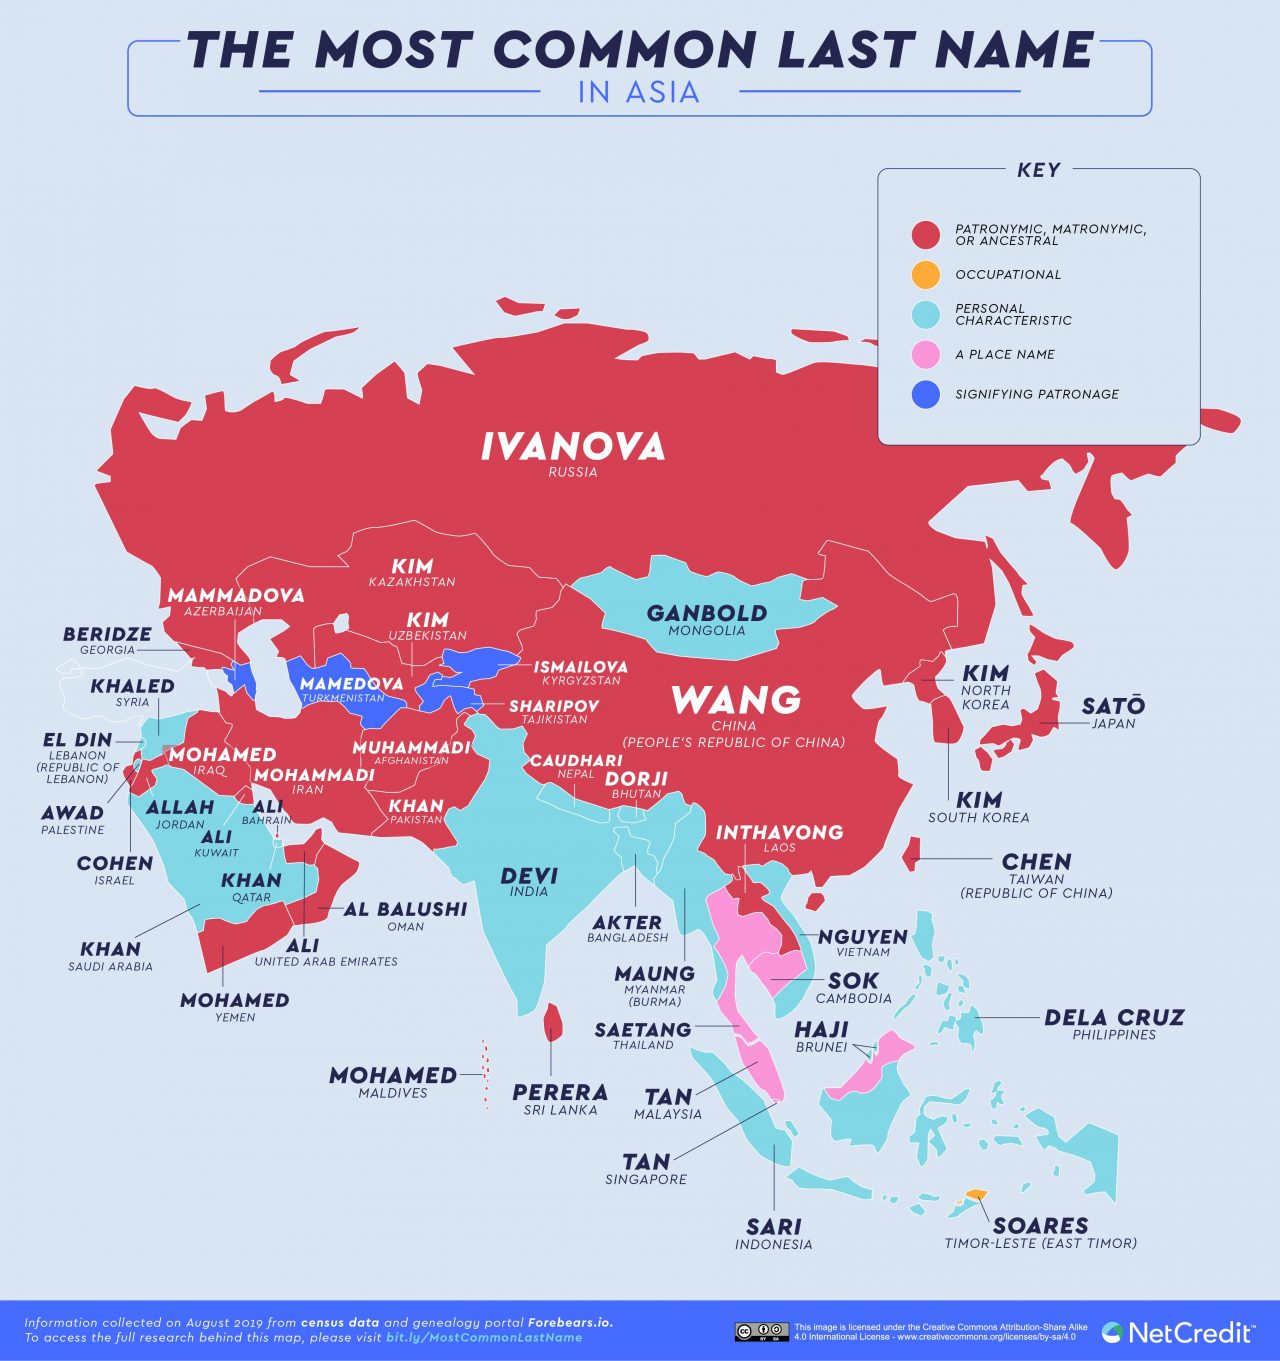 Los apellidos más comunes en el mundo